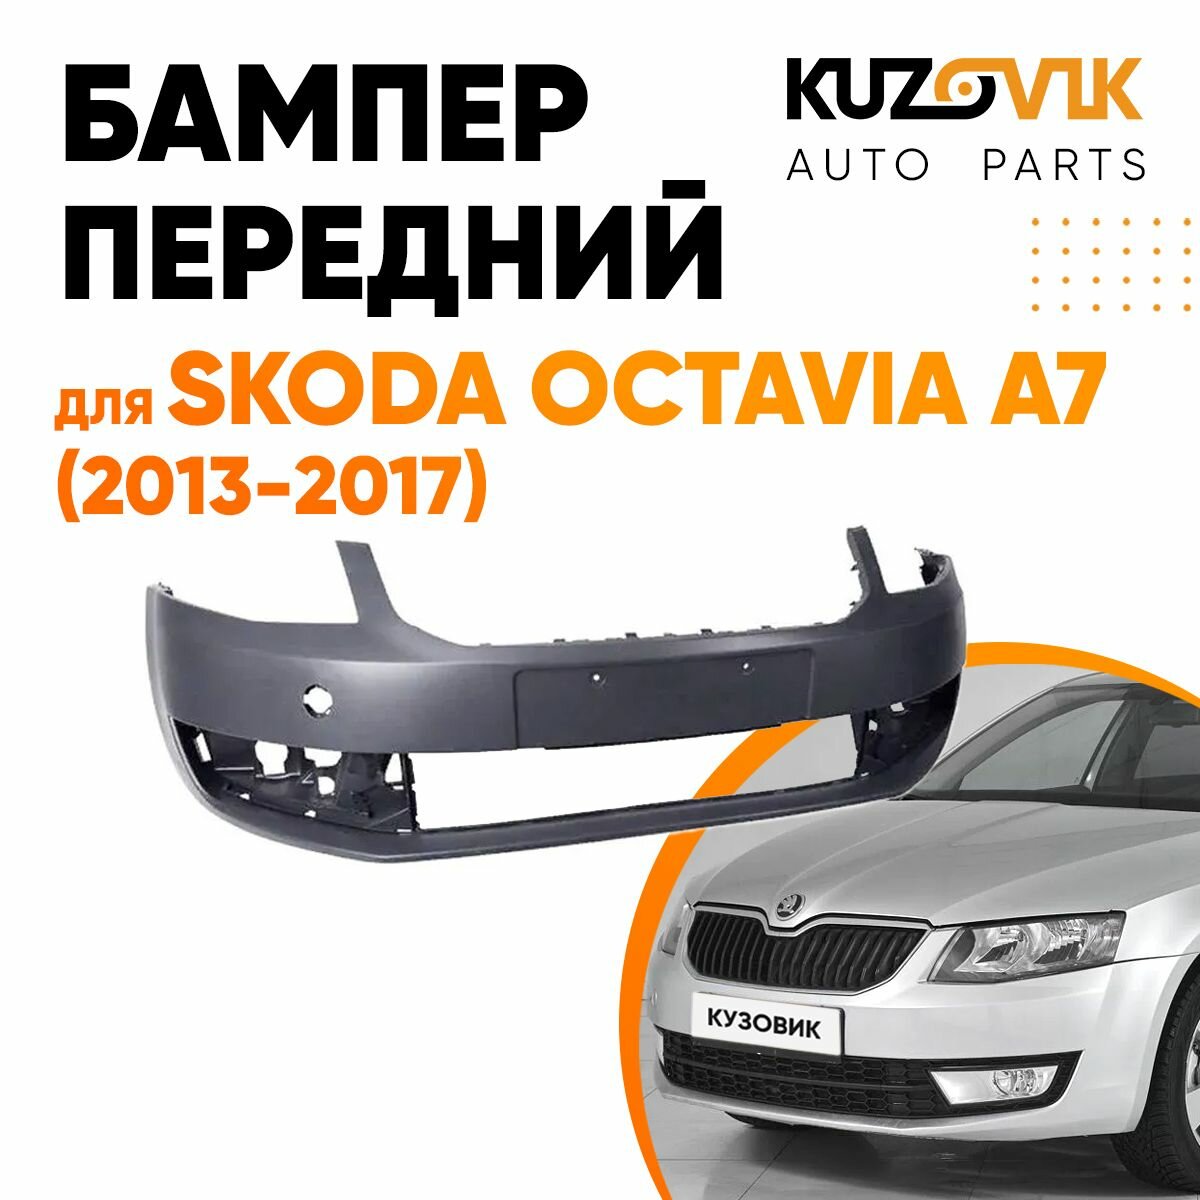 Бампер передний для Шкода Октавия Skoda Octavia А7 (2013-2017)